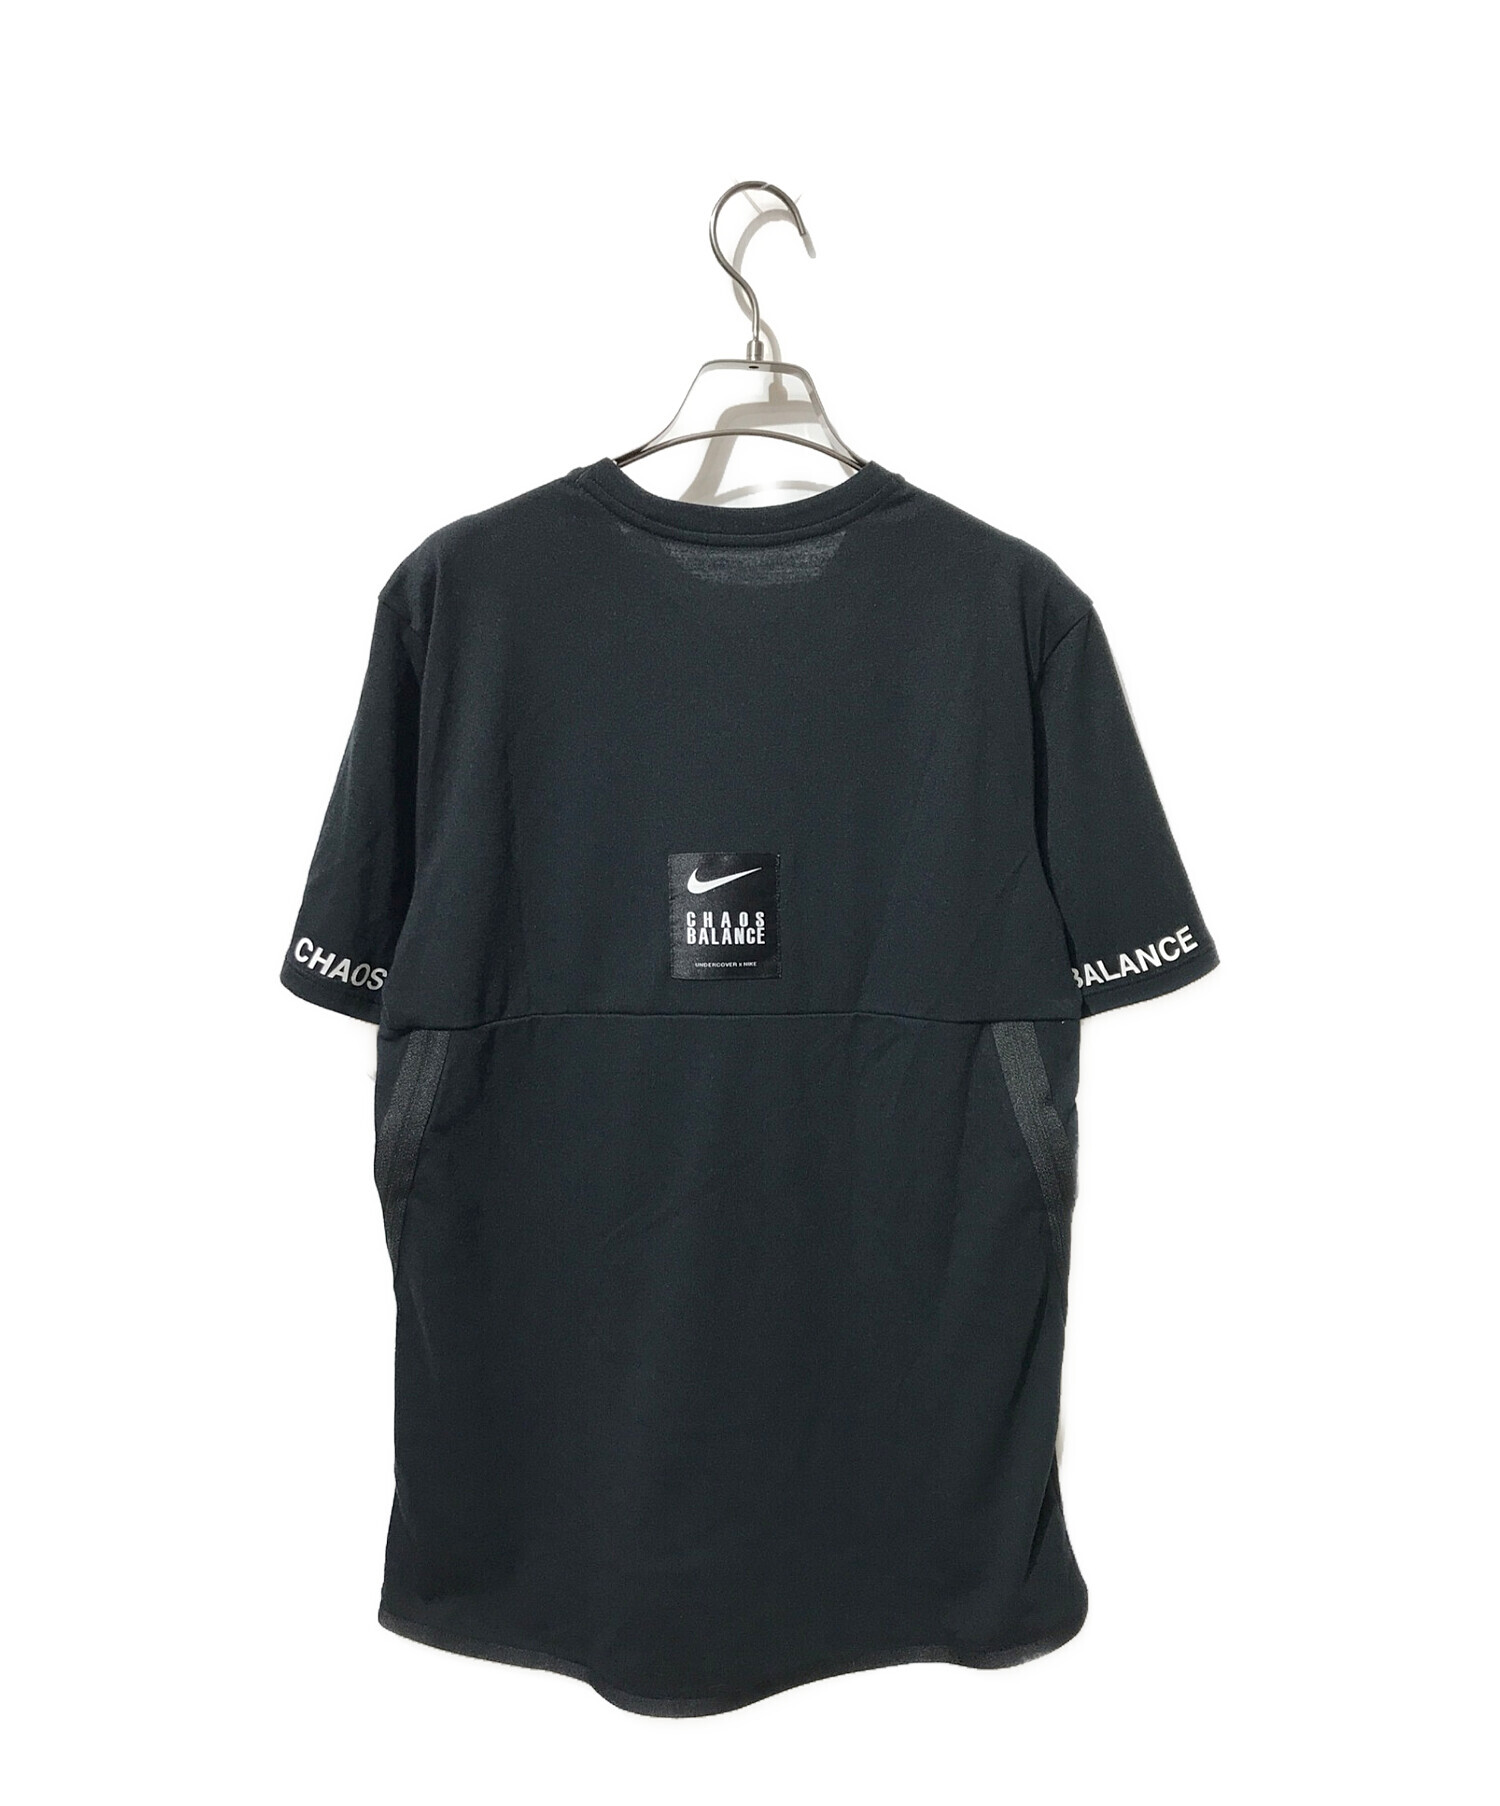 NIKE (ナイキ) UNDERCOVER (アンダーカバー) Tシャツ ブラック サイズ:L